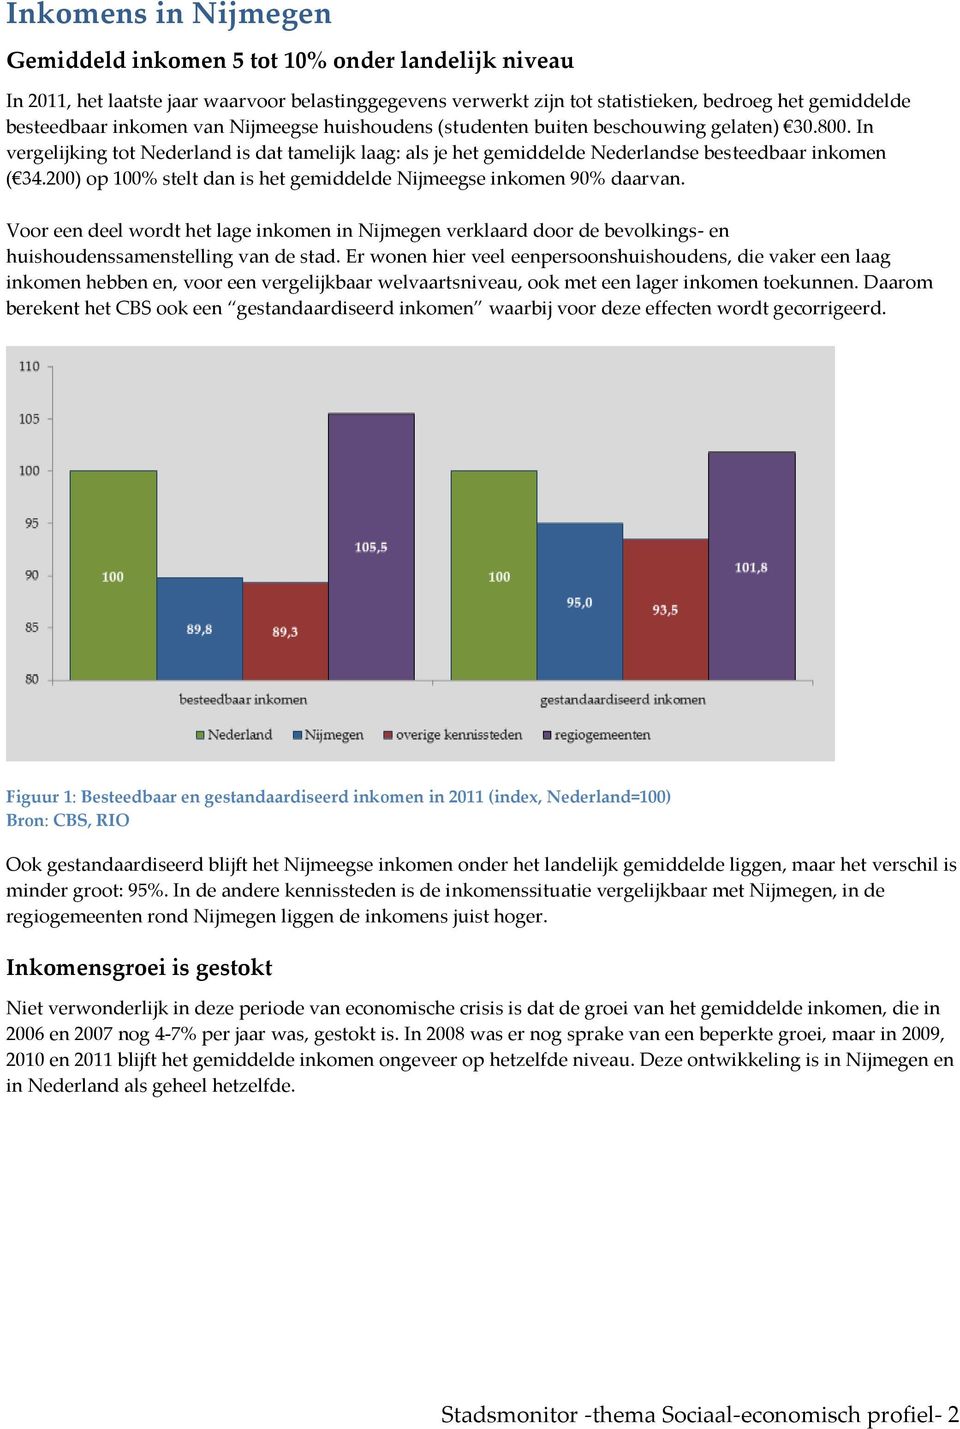 200) op 100% stelt dan is het gemiddelde Nijmeegse inkomen 90% daarvan. Voor een deel wordt het lage inkomen in Nijmegen verklaard door de bevolkings- en huishoudenssamenstelling van de stad.